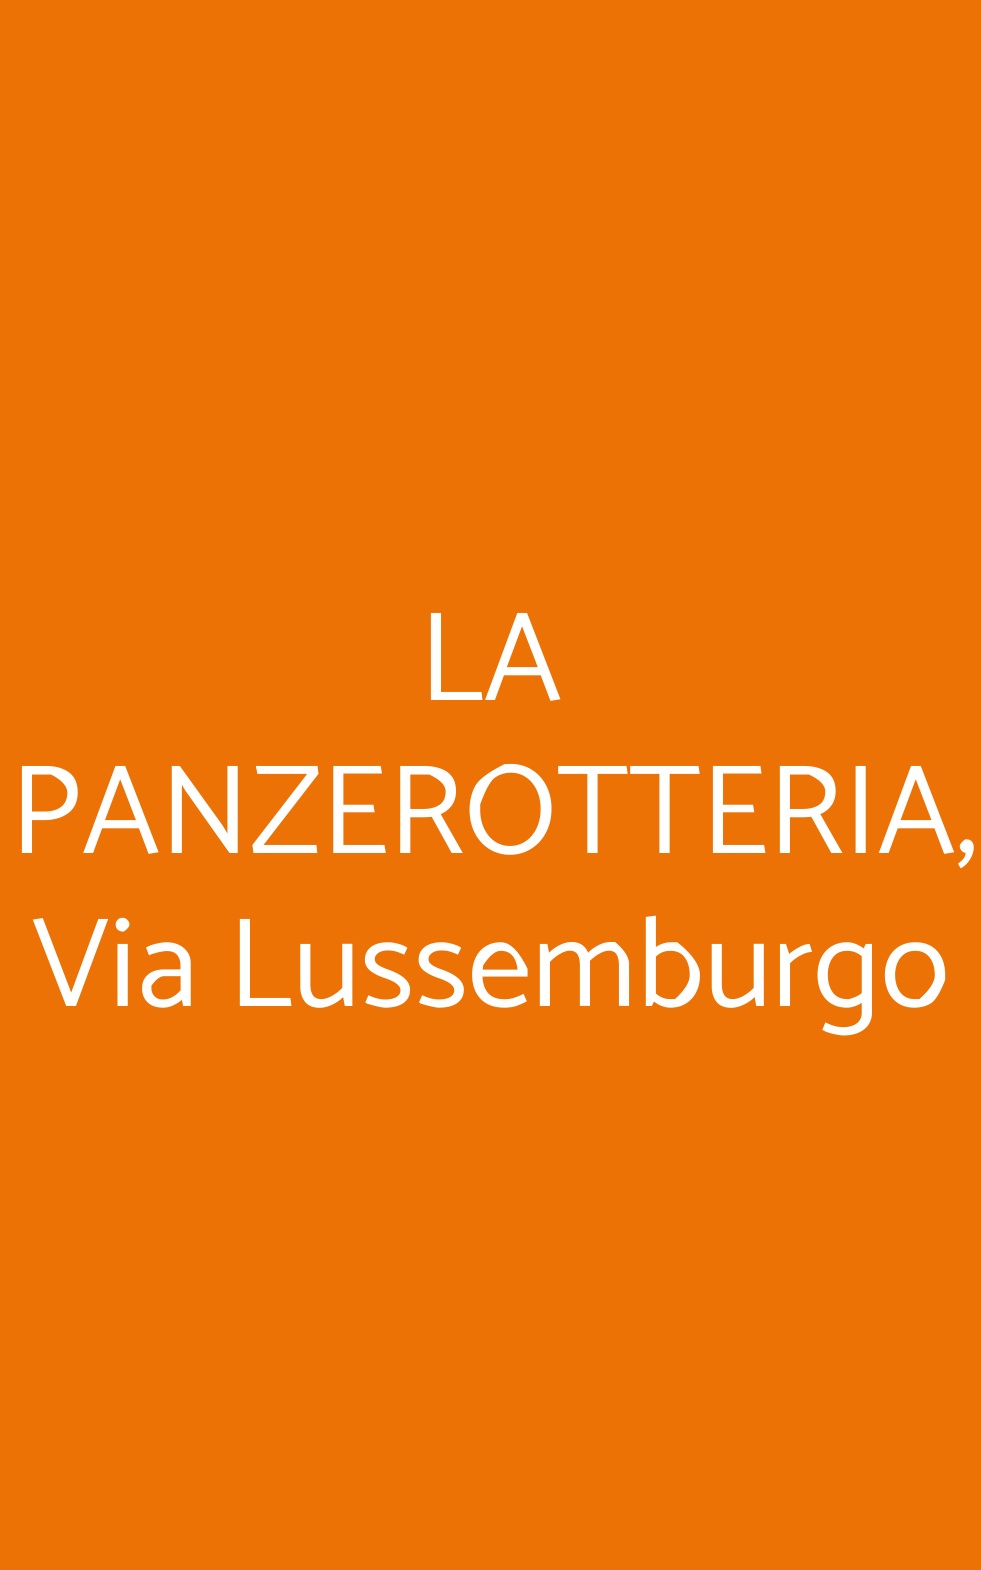 LA PANZEROTTERIA, Via Lussemburgo Verona menù 1 pagina